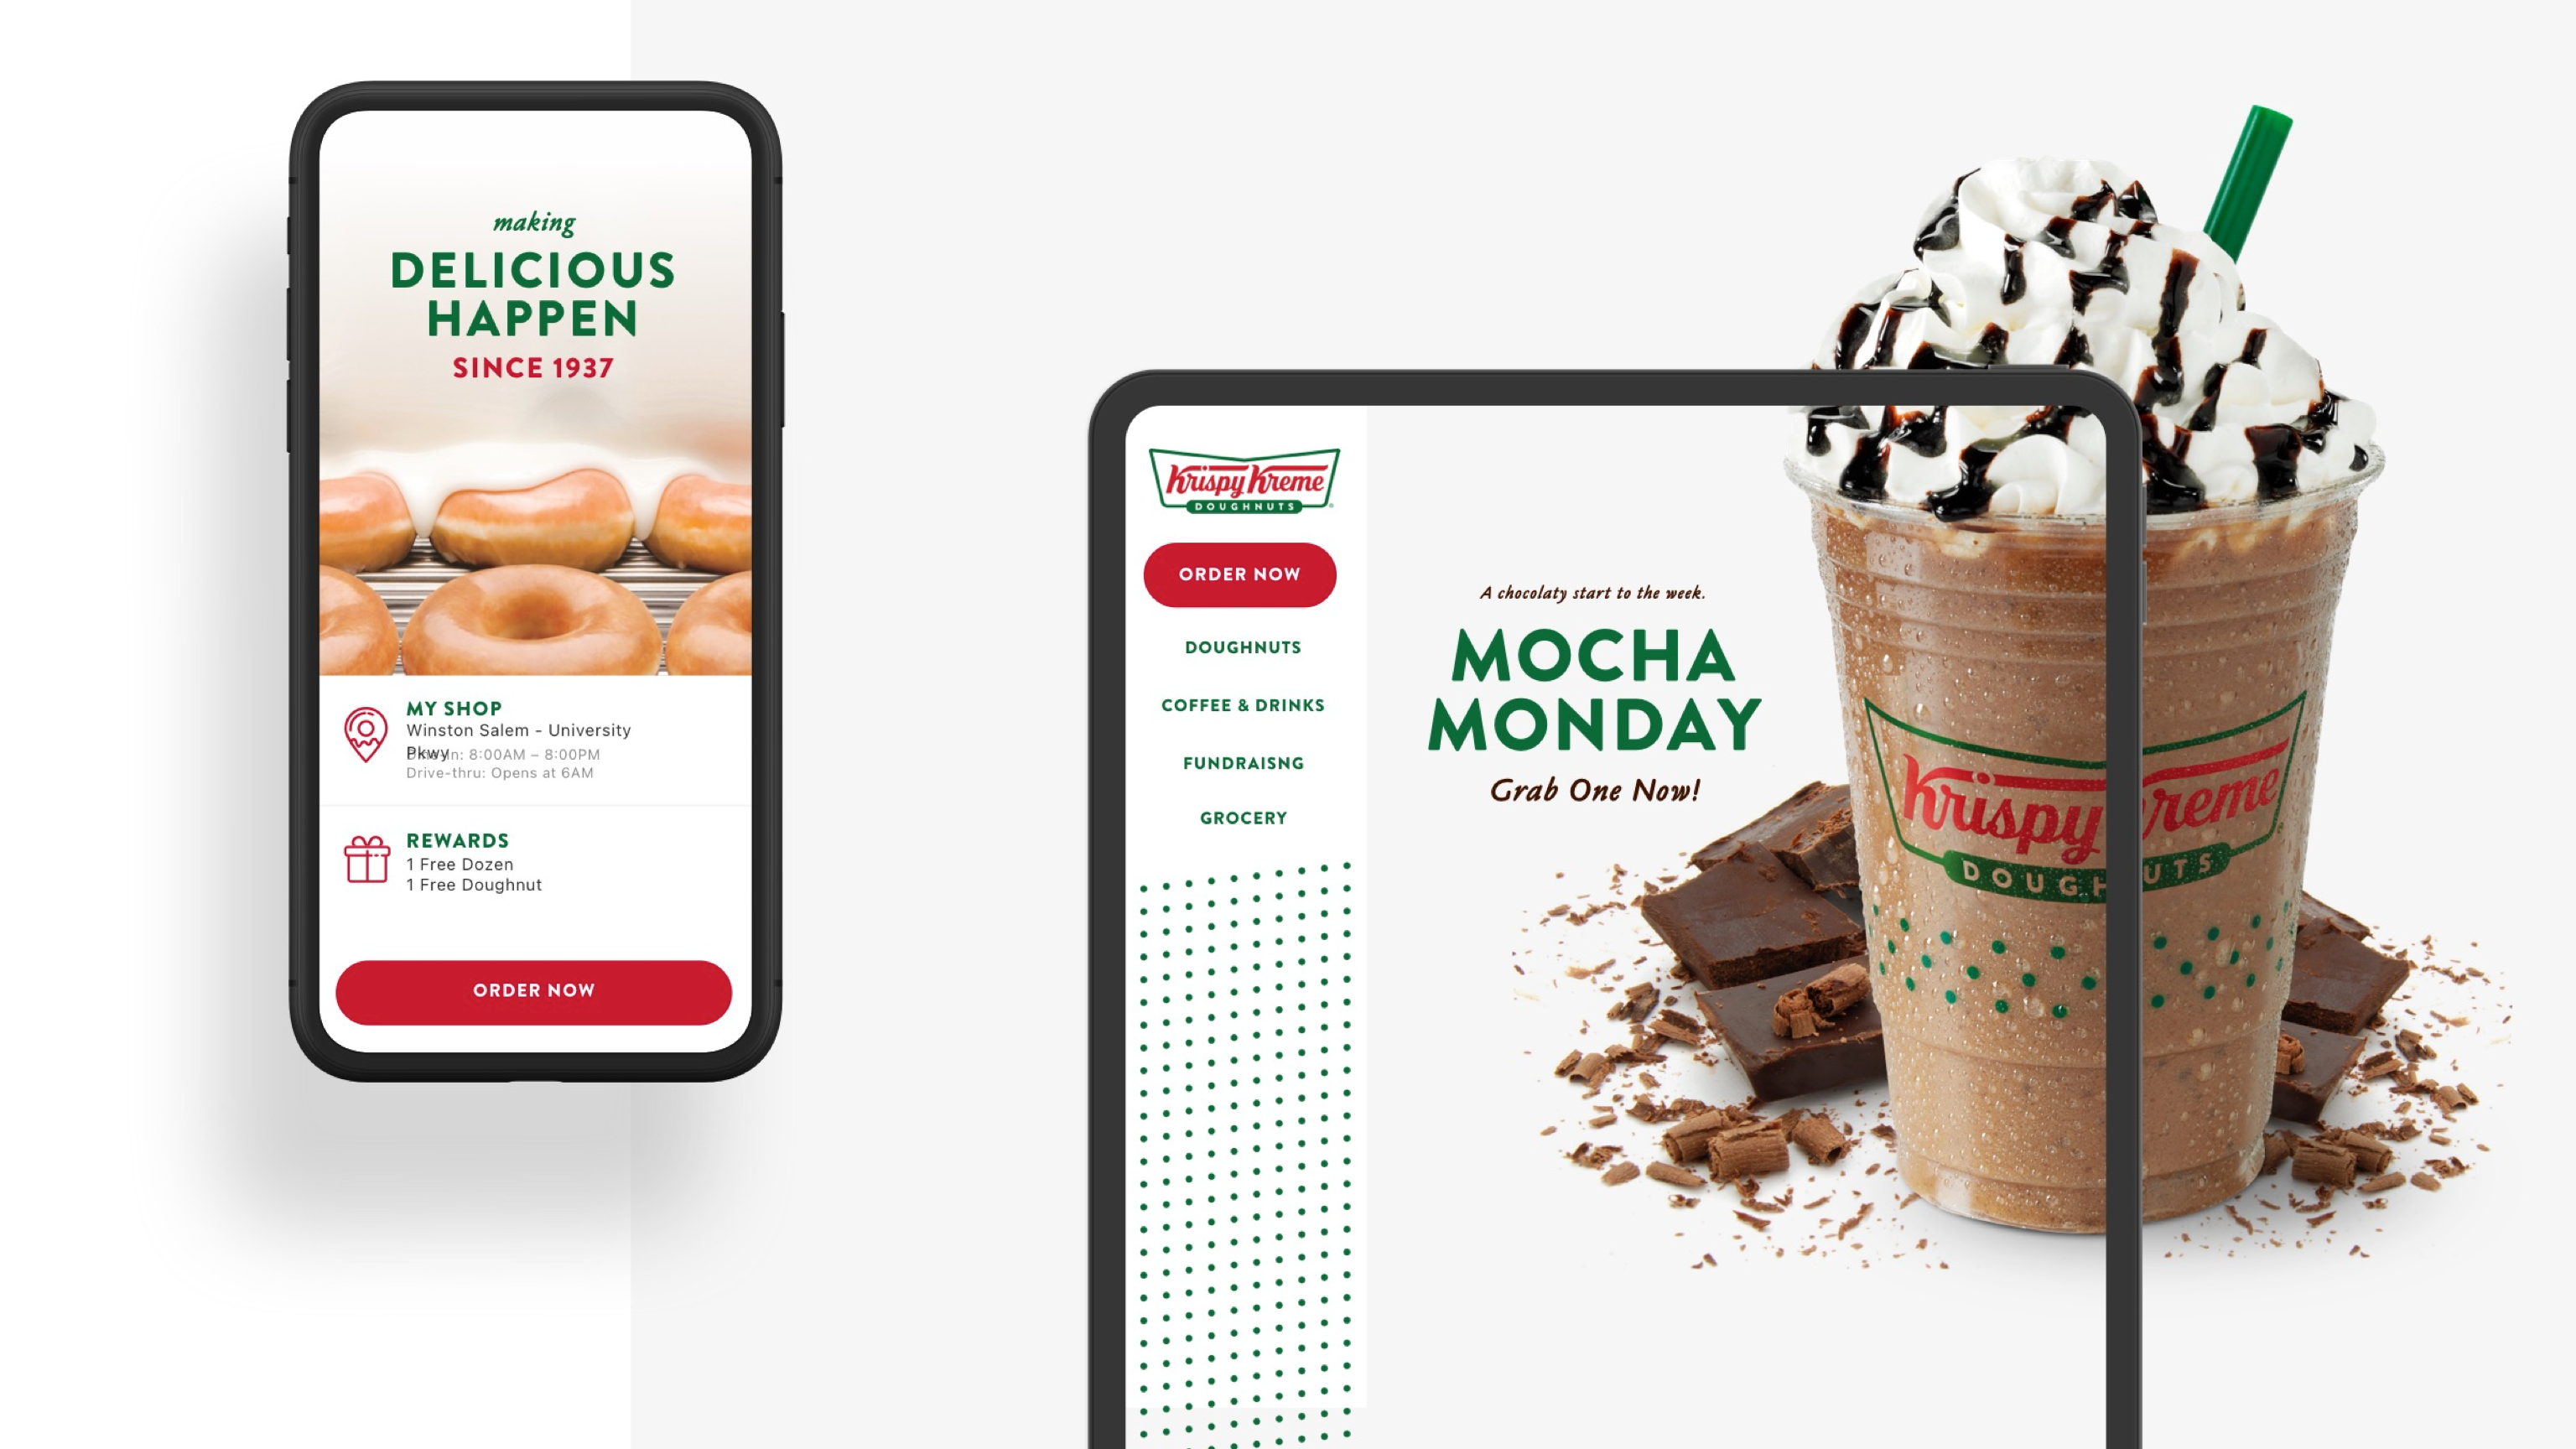 Krispy Kreme's online ordering functionality for mobile app and website.